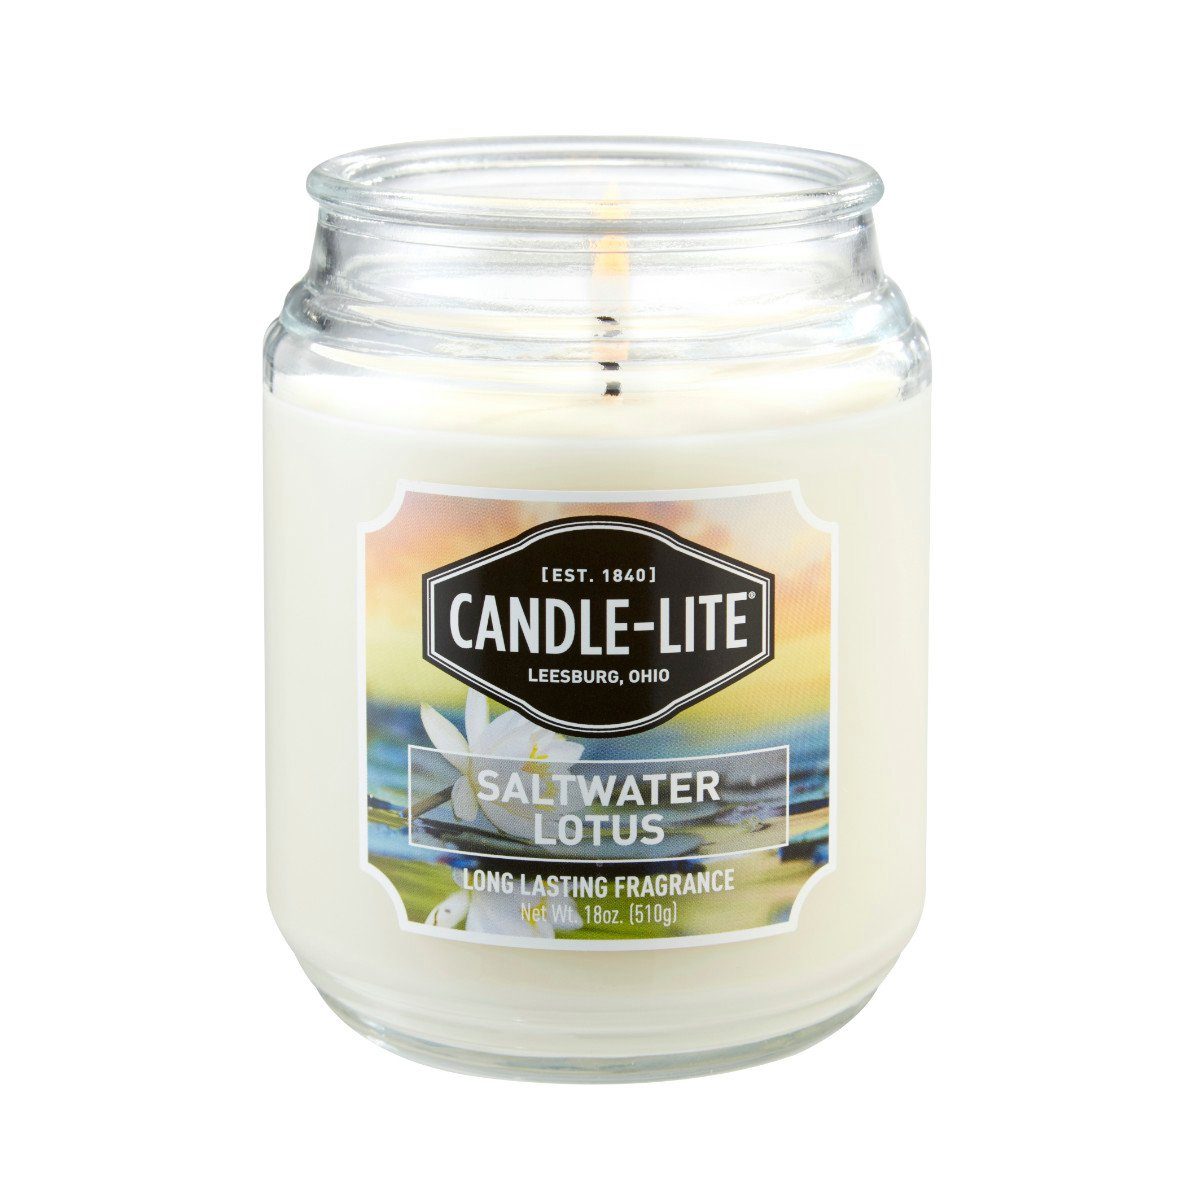 Candle-lite™ Duftkerze Duftkerze Saltwater Lotus - 510g (Einzelartikel)